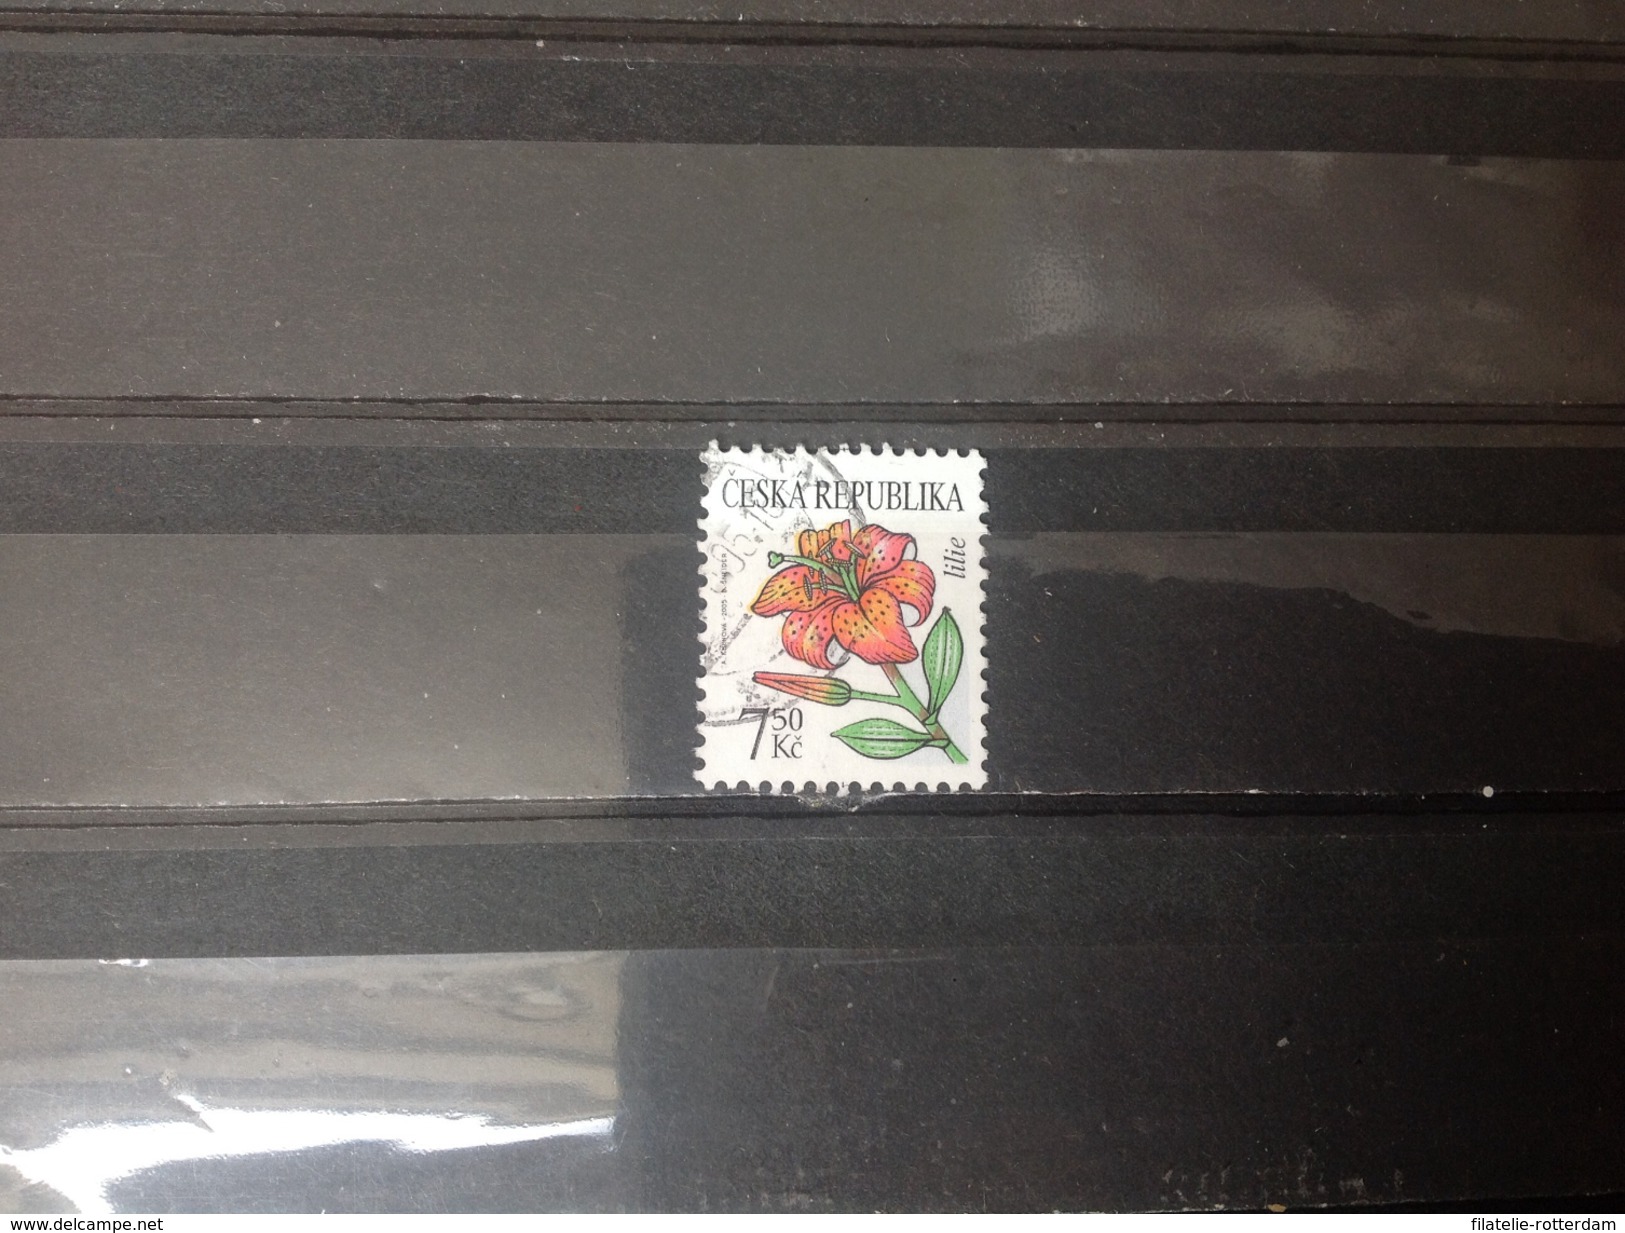 Tsjechië / Czech Republic - Bloemen (7.50) 2005 - Used Stamps